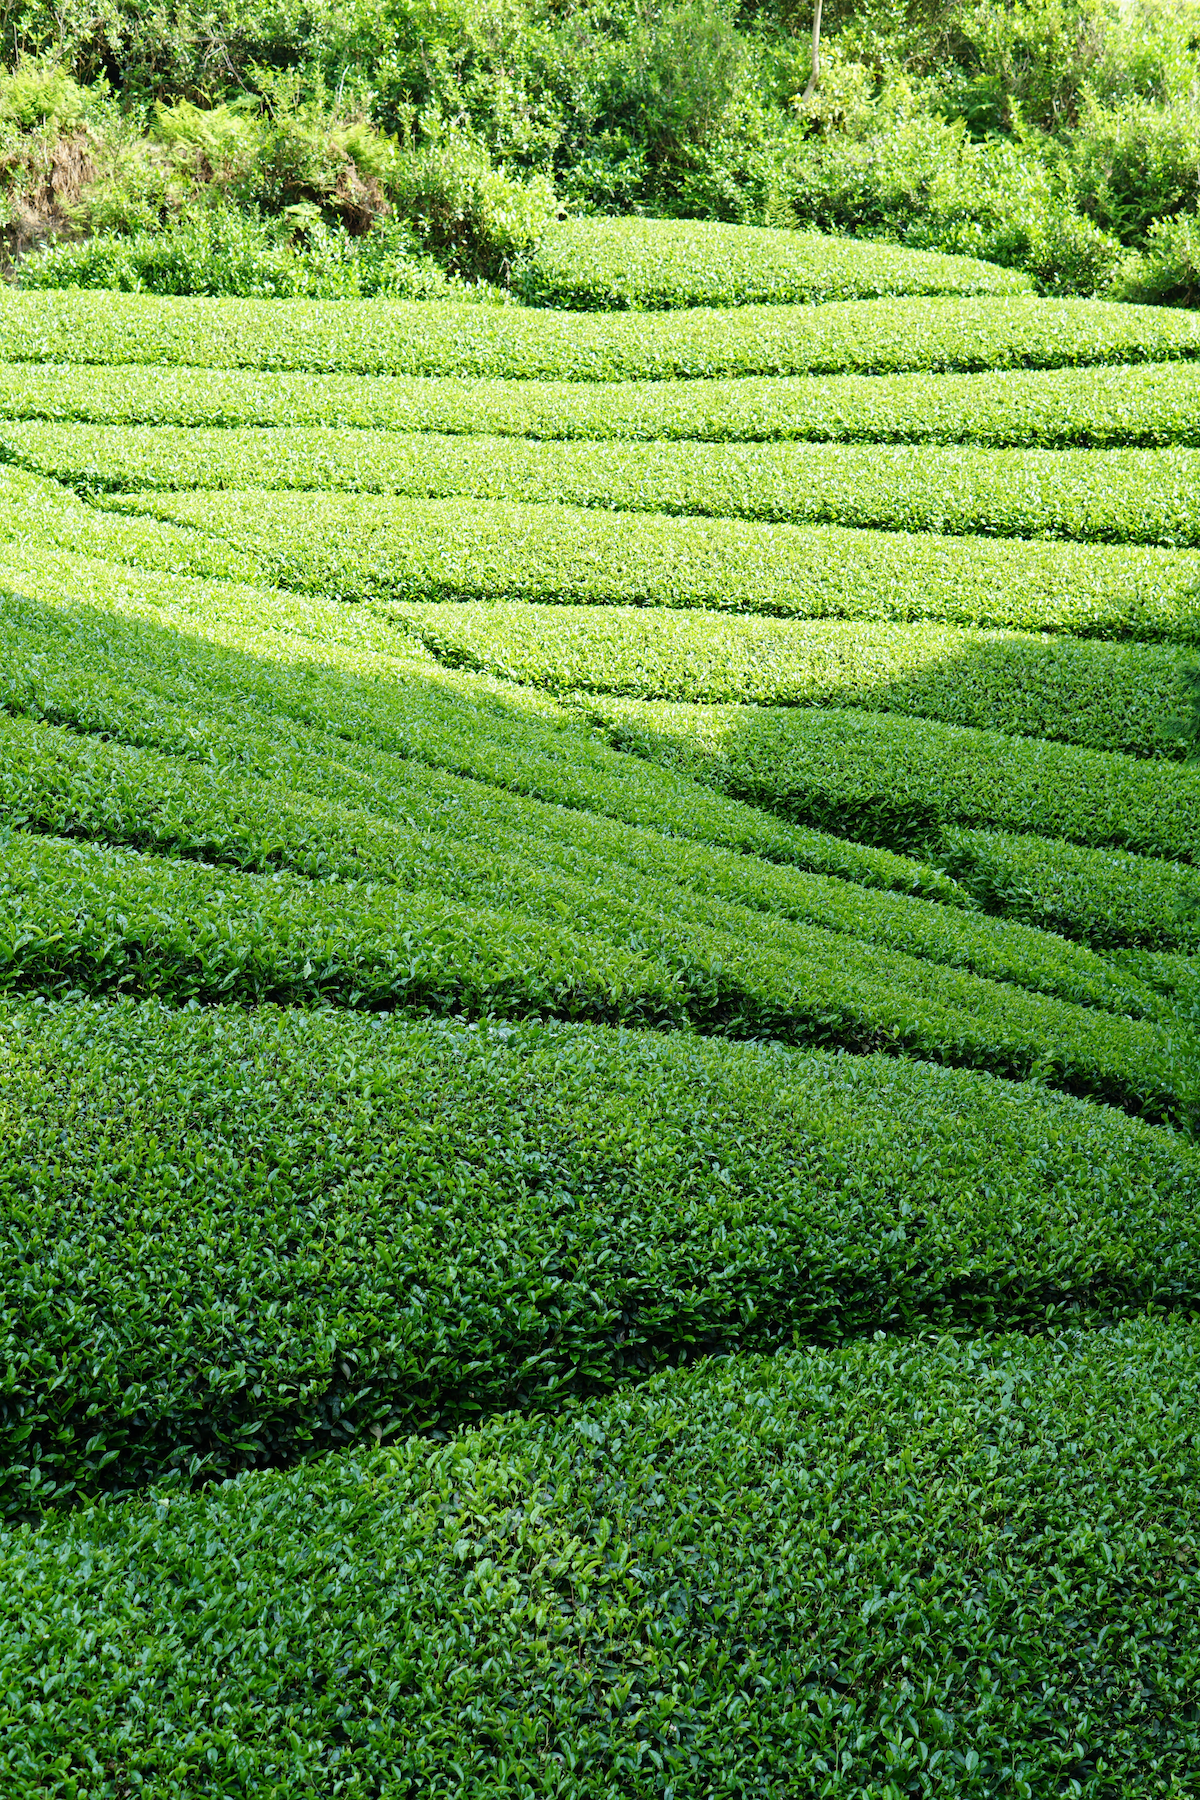 Wazuka tea farm terraces